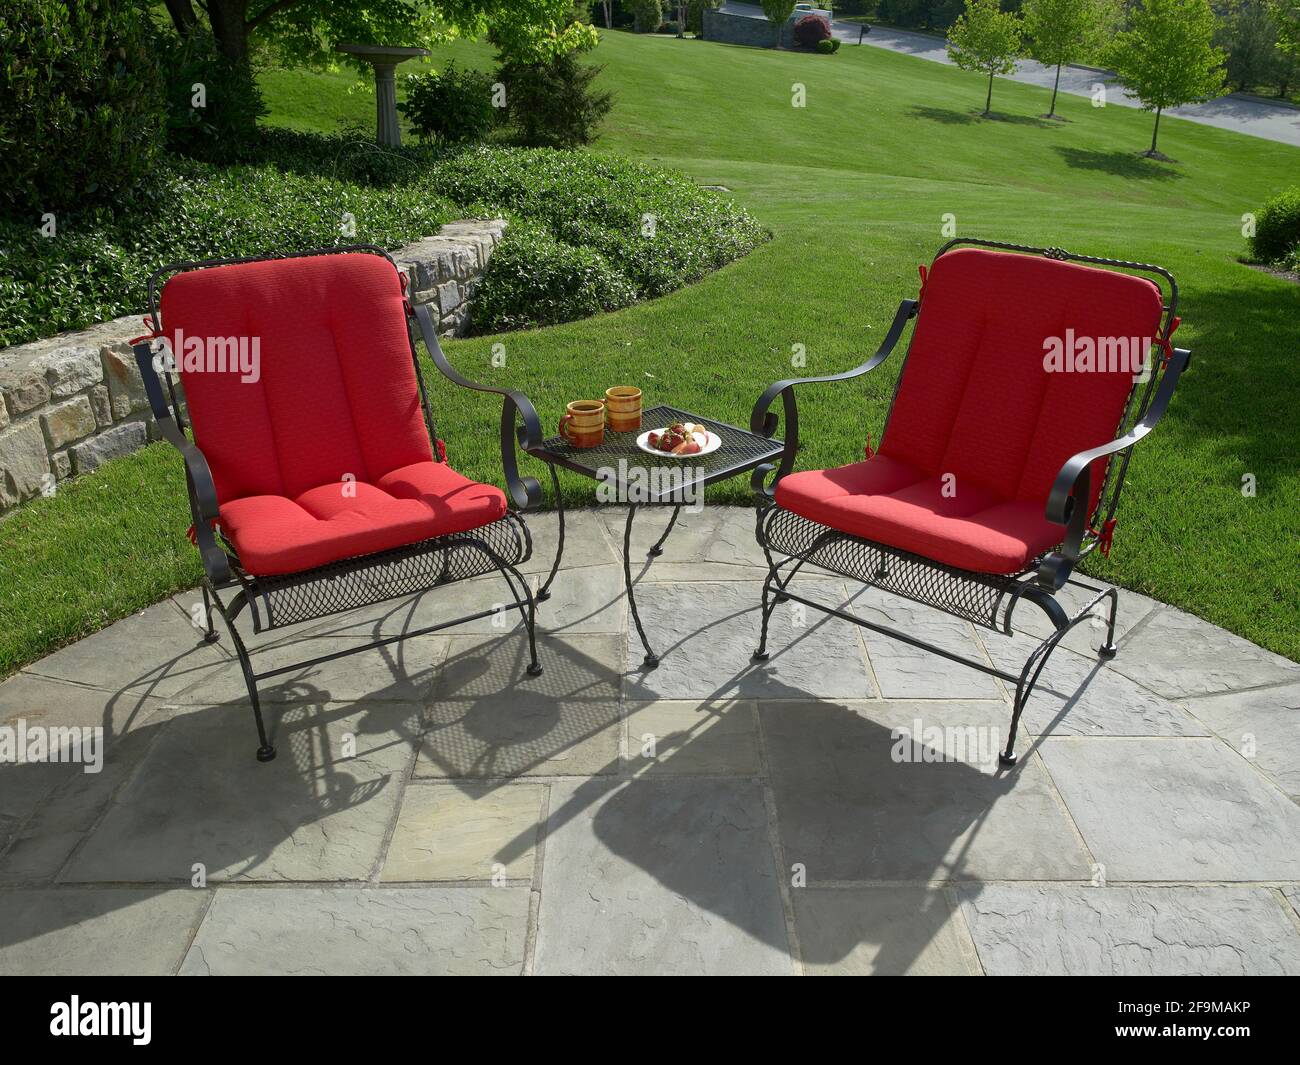 Outdoor furniture on stone patio, Pennsylvania, USA Stock Photo